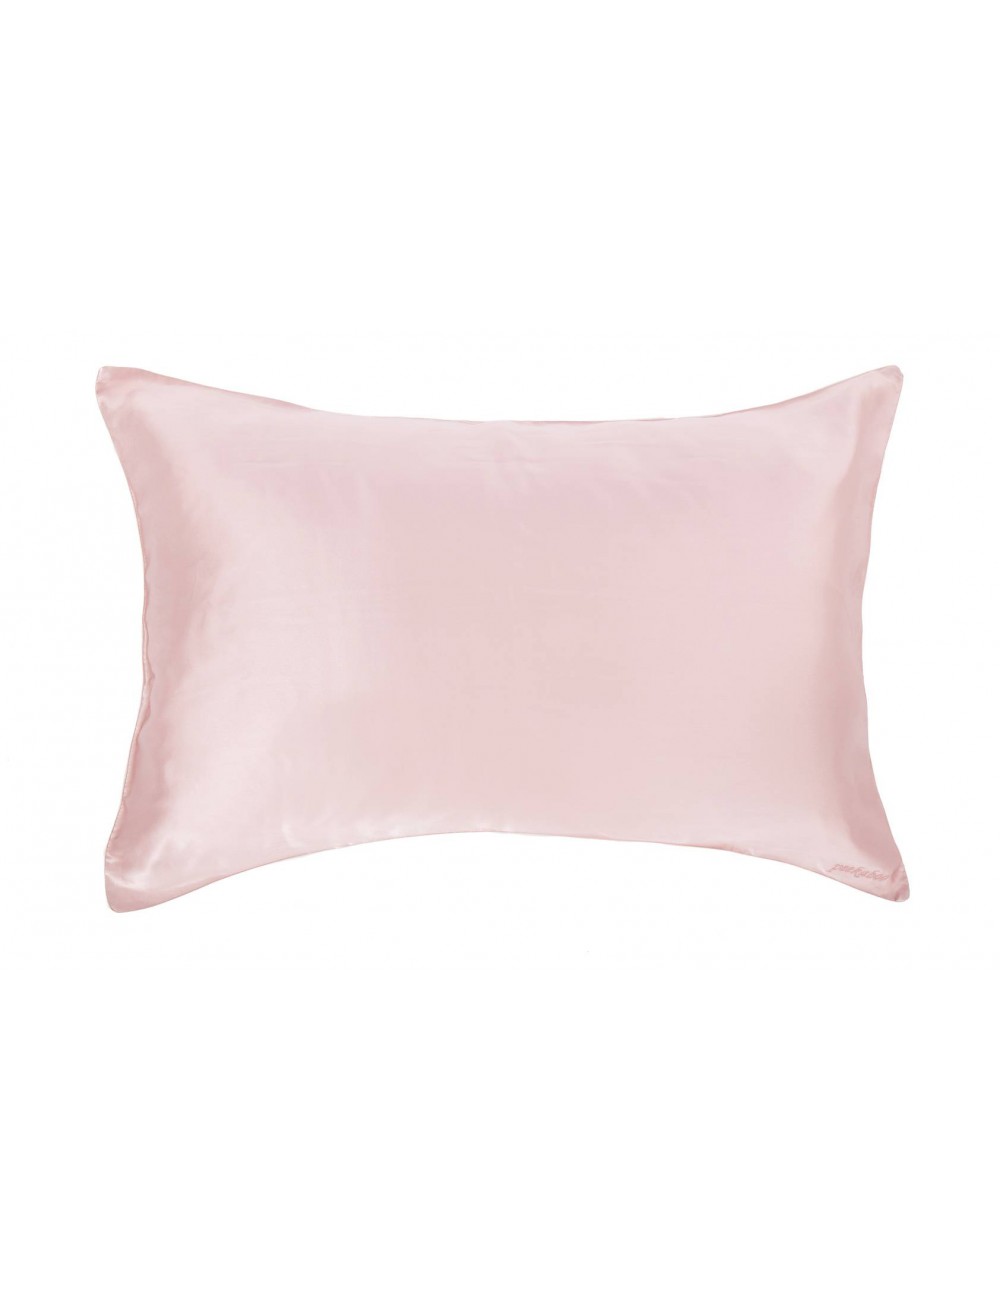 PEEKABOO 絲綢枕頭套 (粉色)